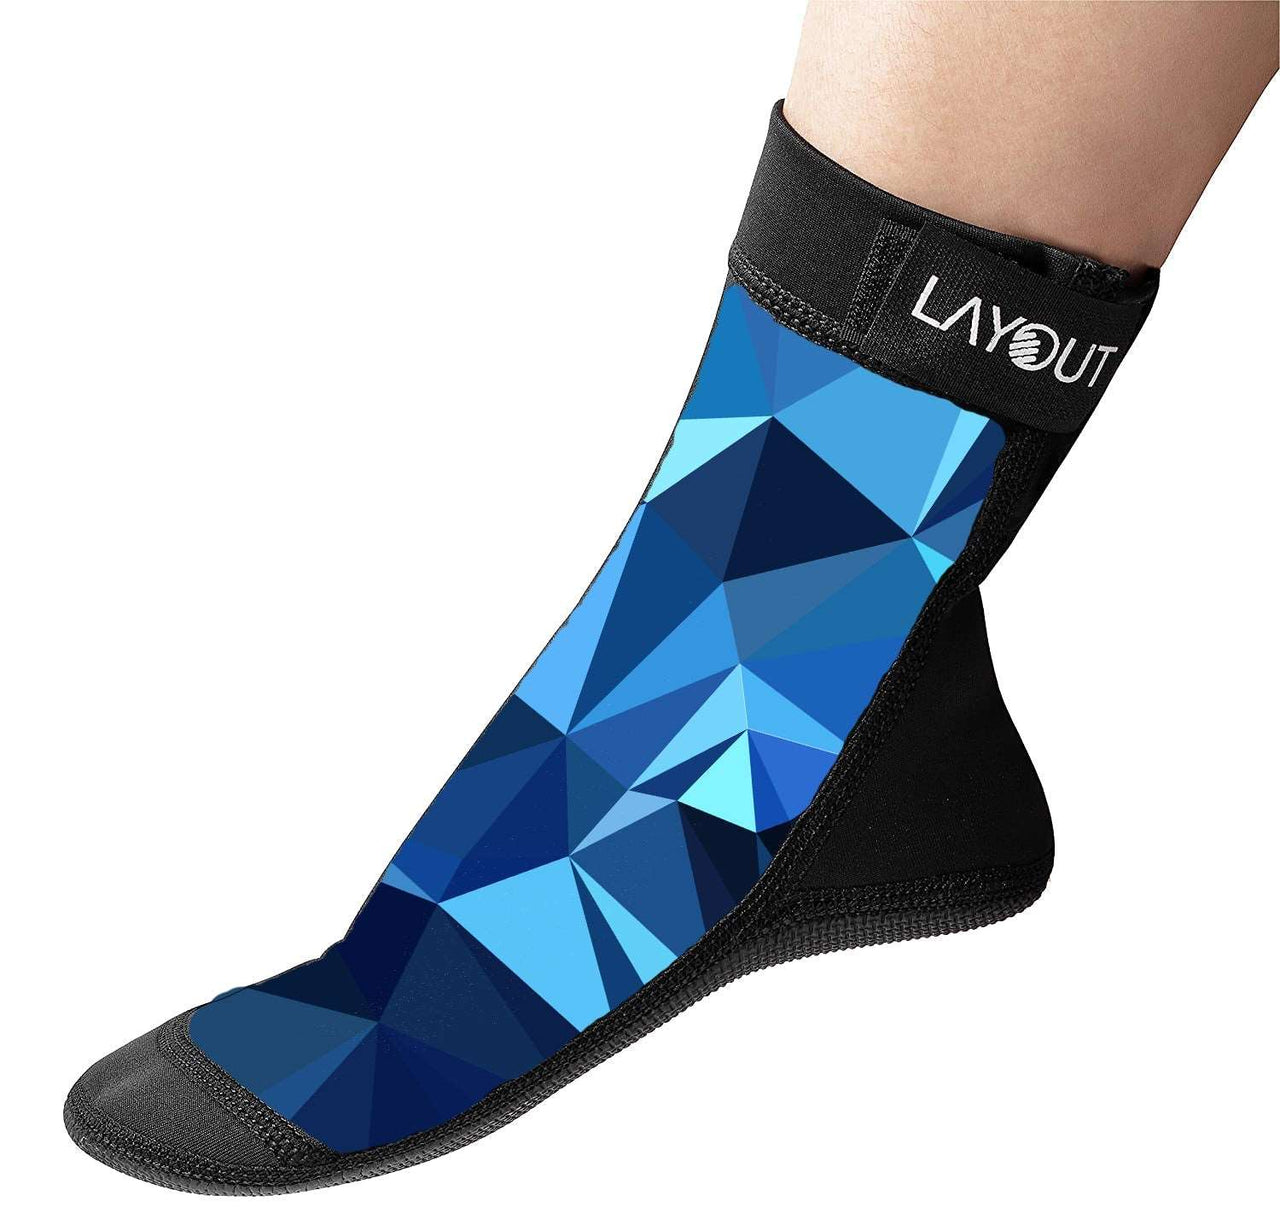 Layout Beach Socks - Layout Ultimate